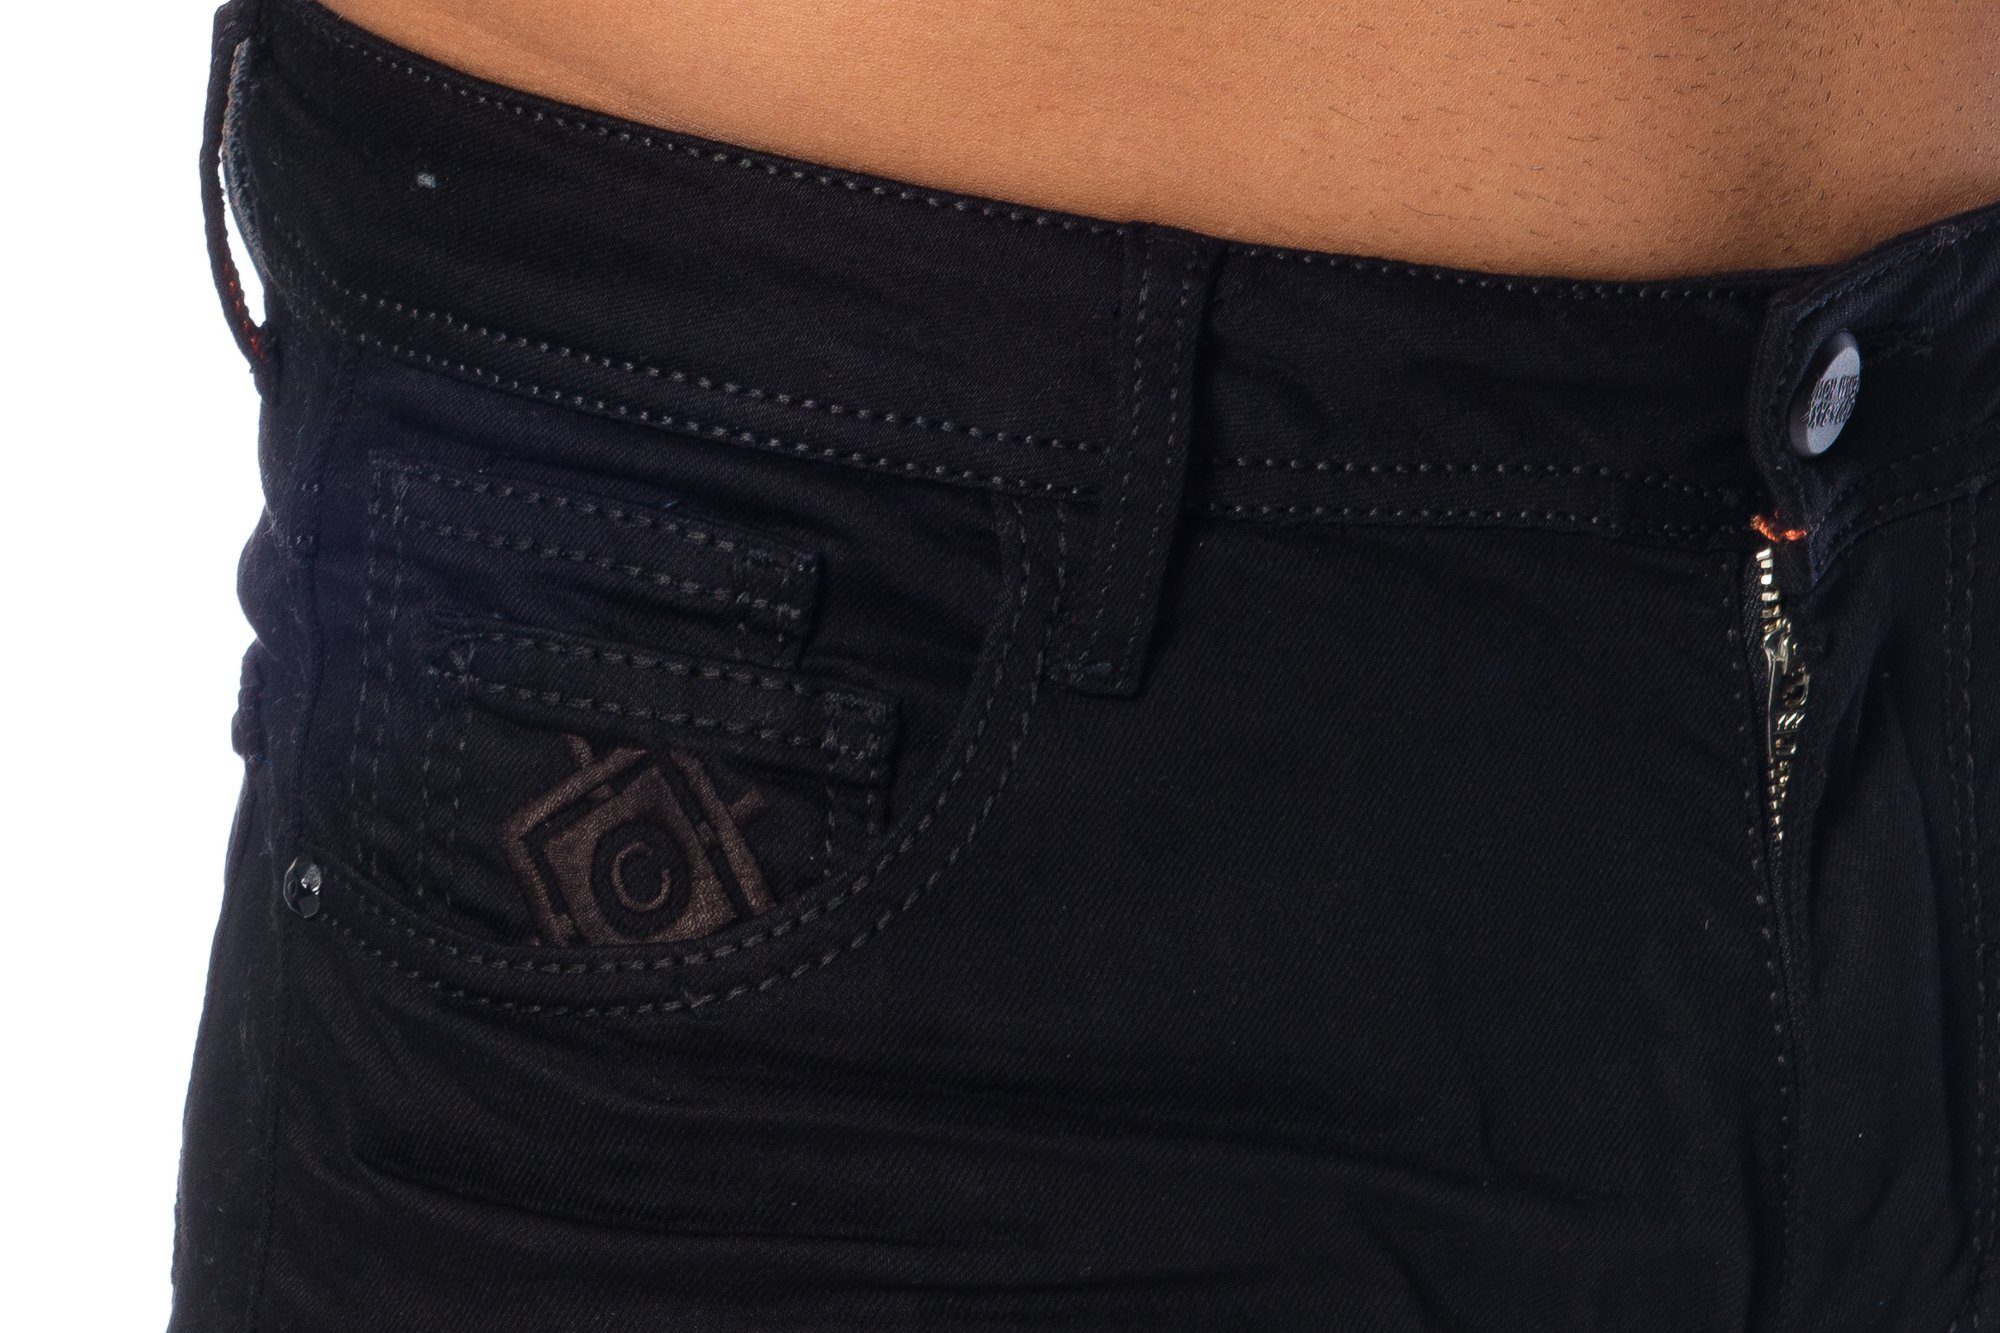 mit Herren dicken Nähten Elastisches basic Tragekomfort Cipo Hose Material Look angenehmen im dezenten Slim-fit-Jeans für & Baxx Jeans